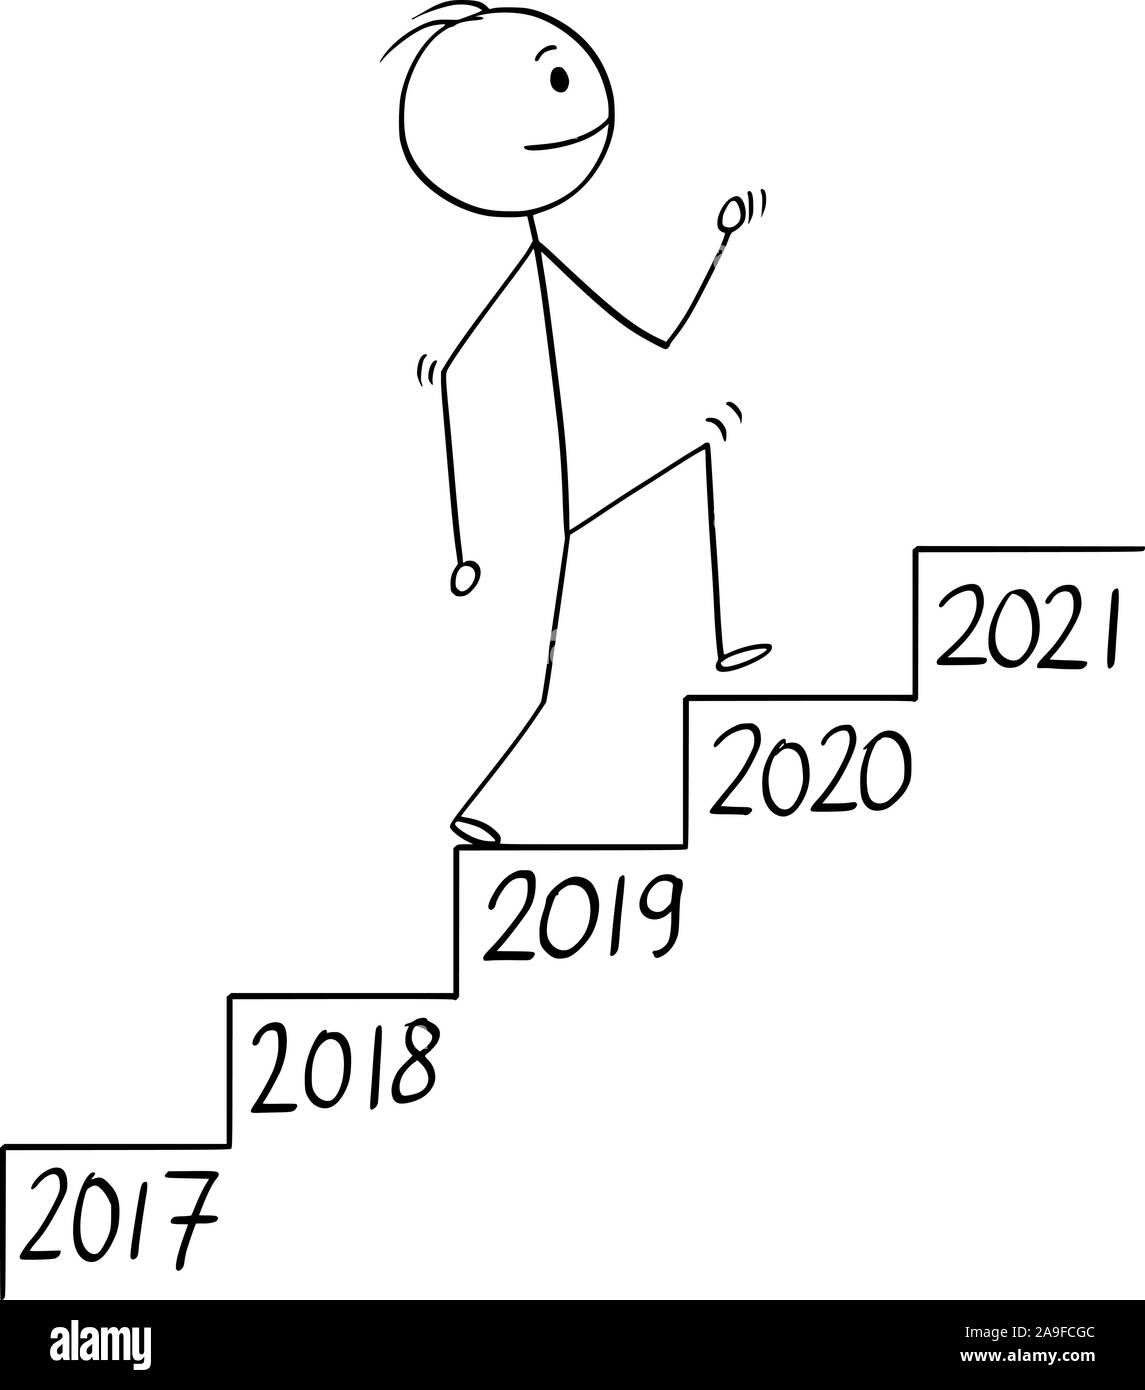 Vector cartoon stick figure dessin illustration conceptuelle de l'homme d'affaires ou en montant les escaliers escalier ou un escalier ou à l'année nombre de chaque étape. Concept d'entreprise de croissance dans le temps. Illustration de Vecteur